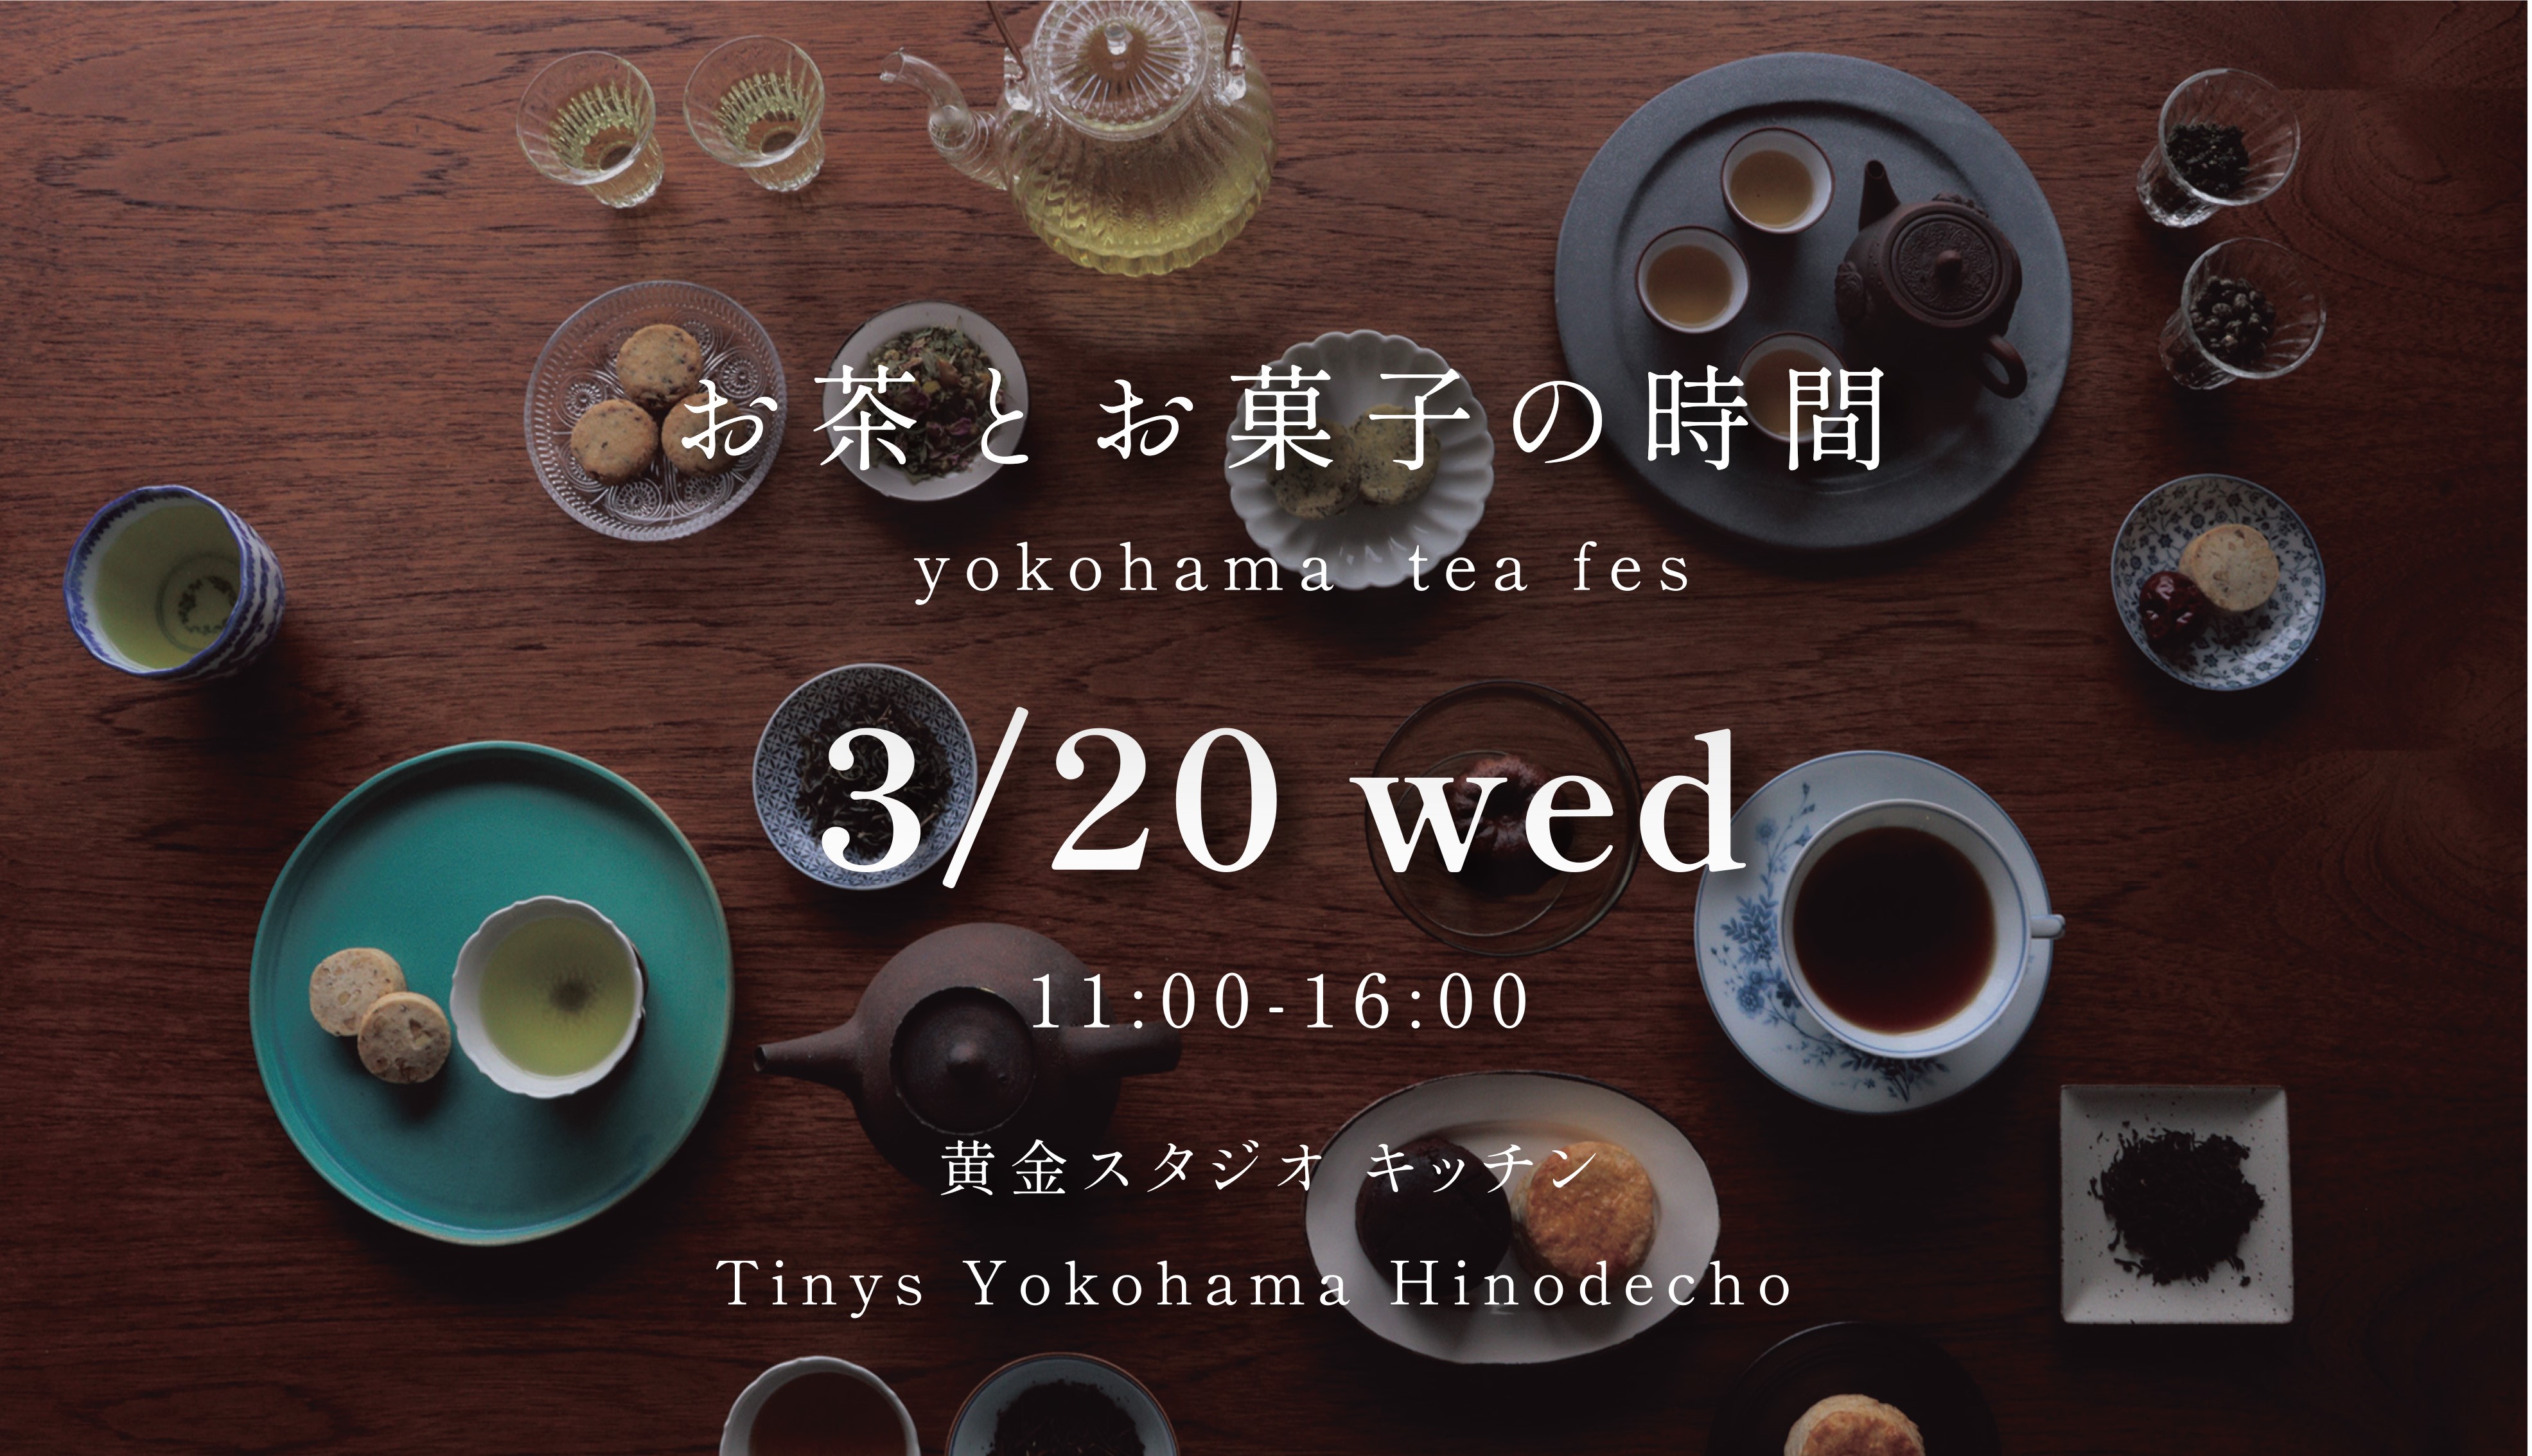 お茶とお菓子の時間 yokohama tea fes